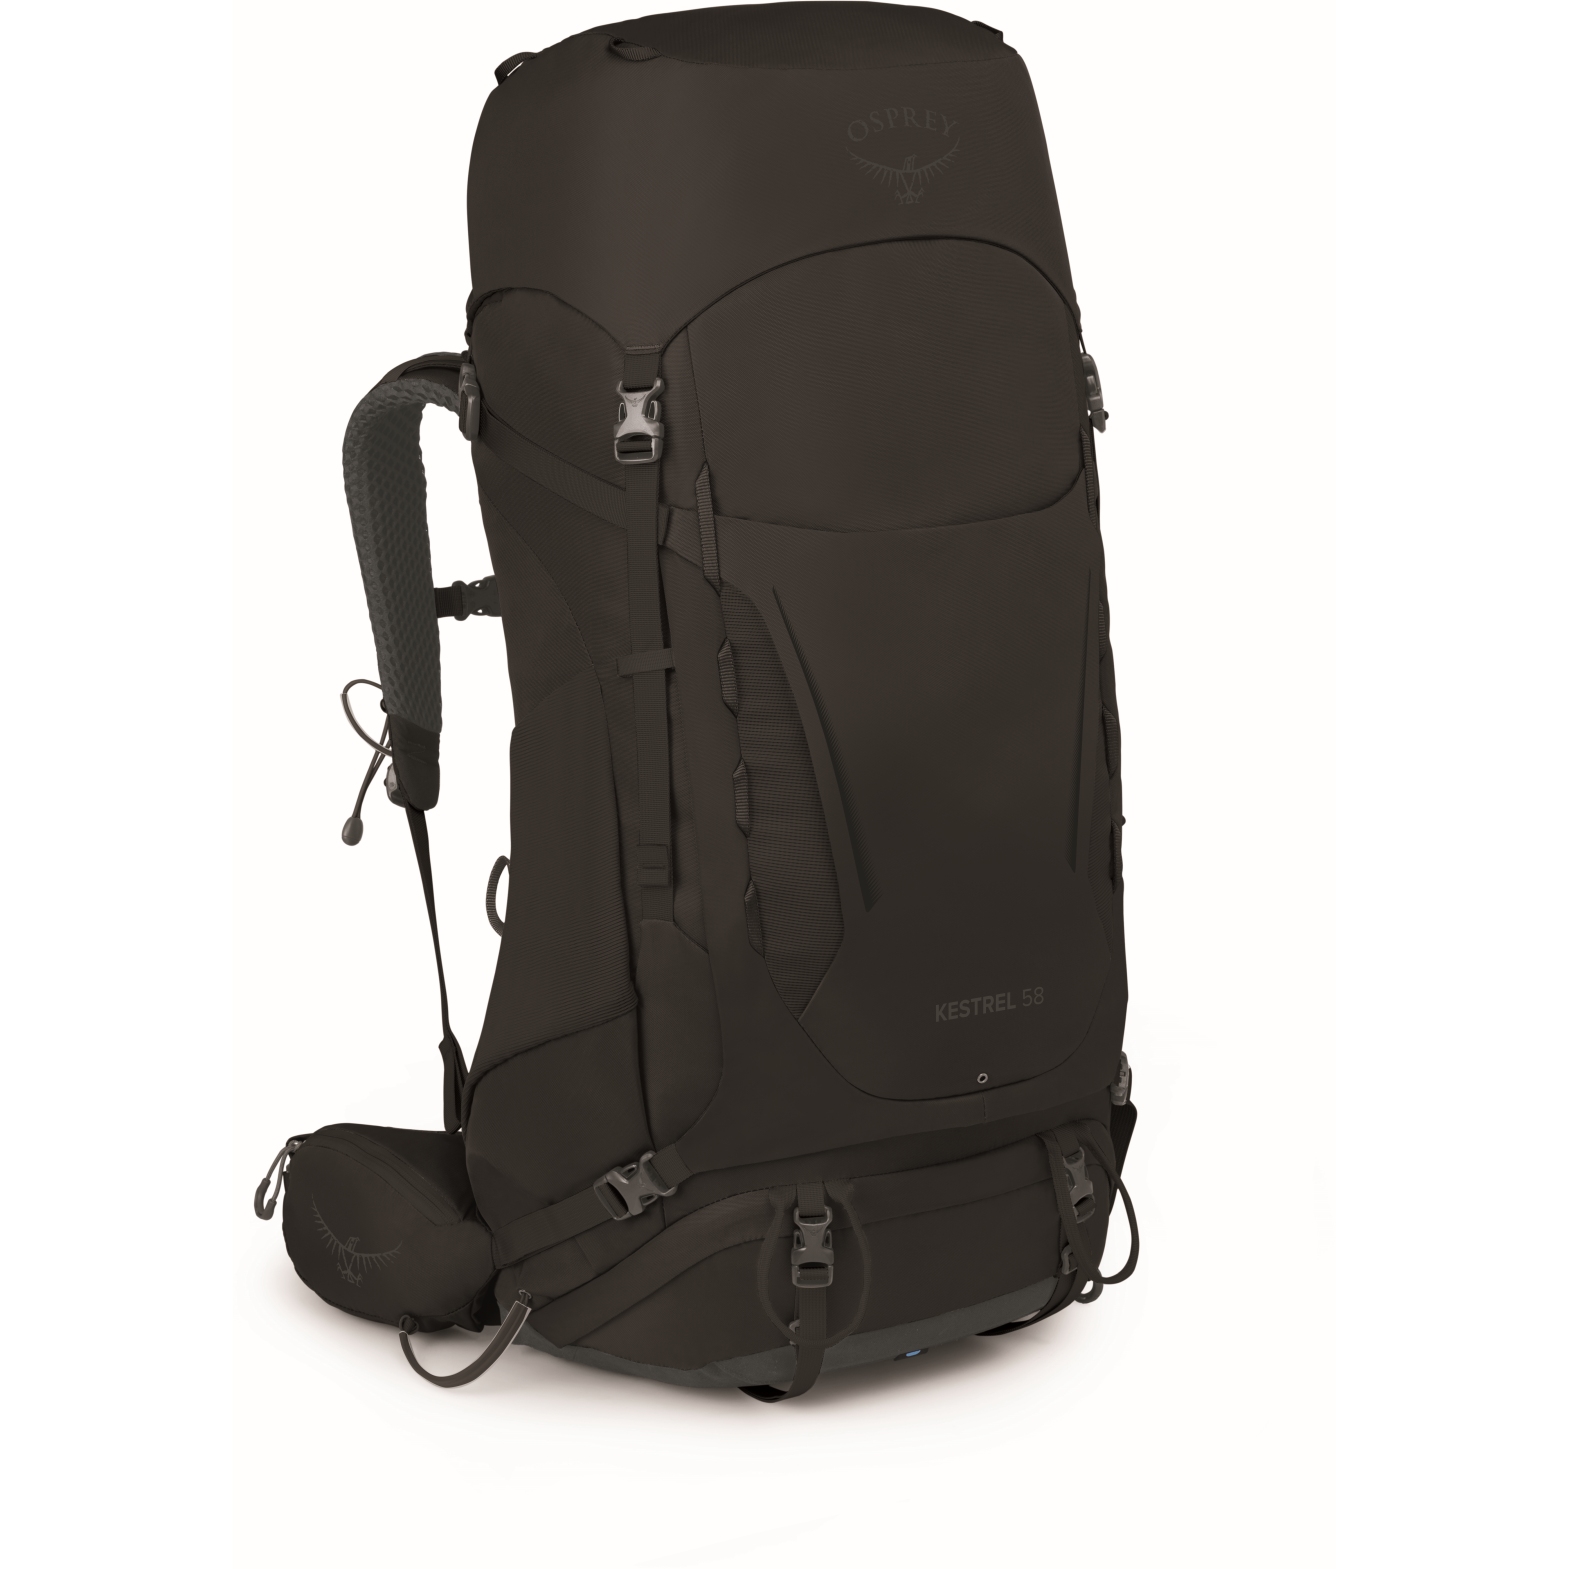 Picture of Osprey Kestrel 58 Backpack - Black - S/M